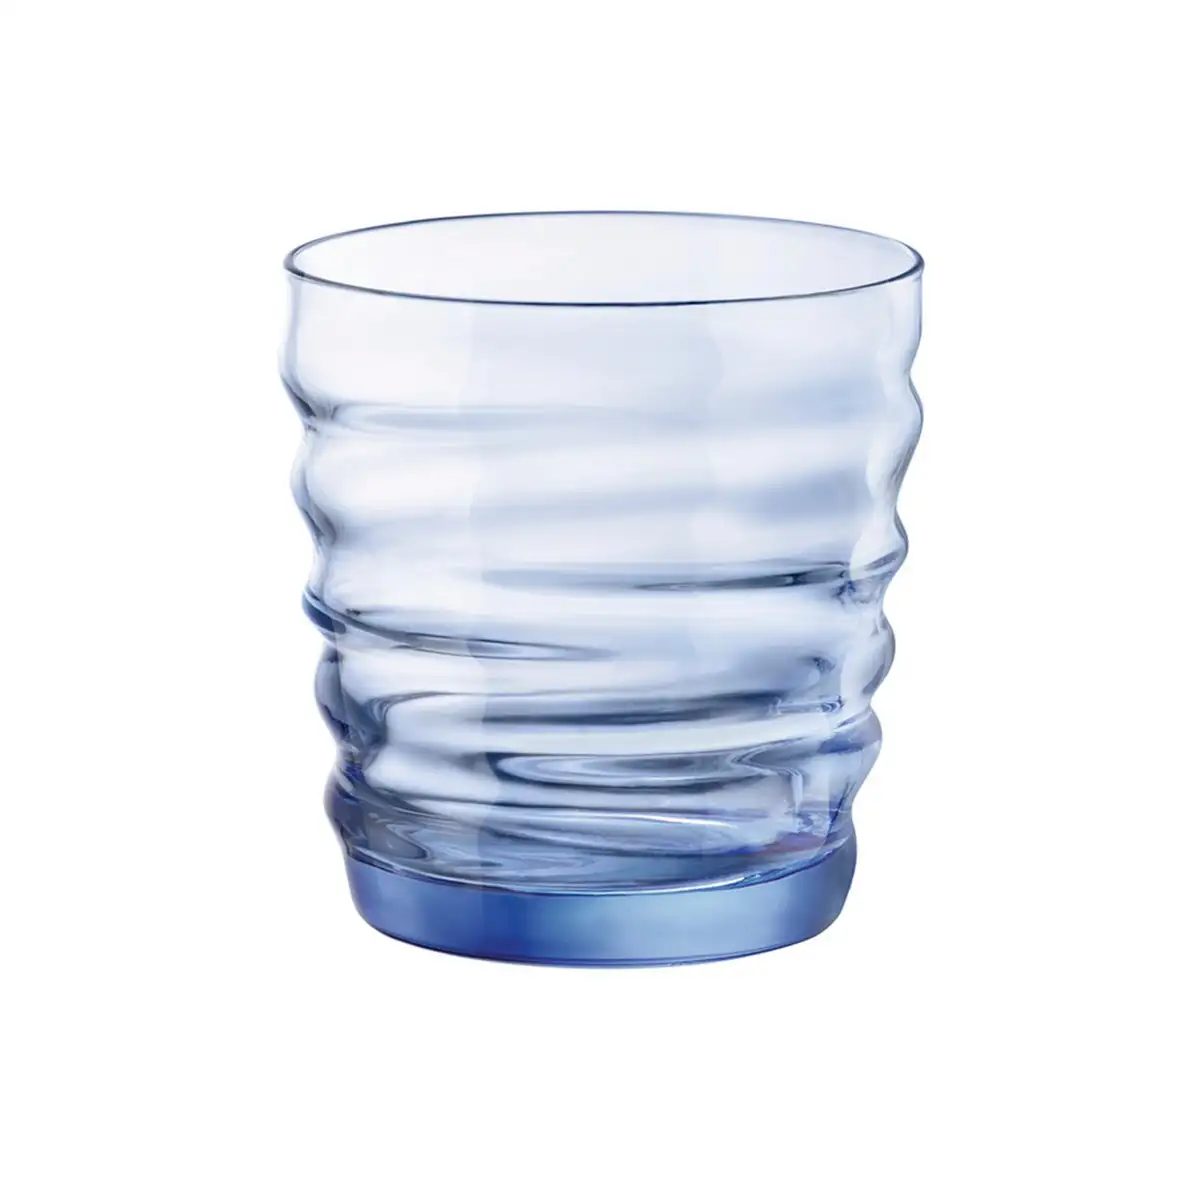 Set de verres bormioli rocco 6 unites bleu verre 300 ml _3665. DIAYTAR SENEGAL - Où Choisir Devient une Découverte. Explorez notre boutique en ligne et trouvez des articles qui vous surprennent et vous ravissent à chaque clic.